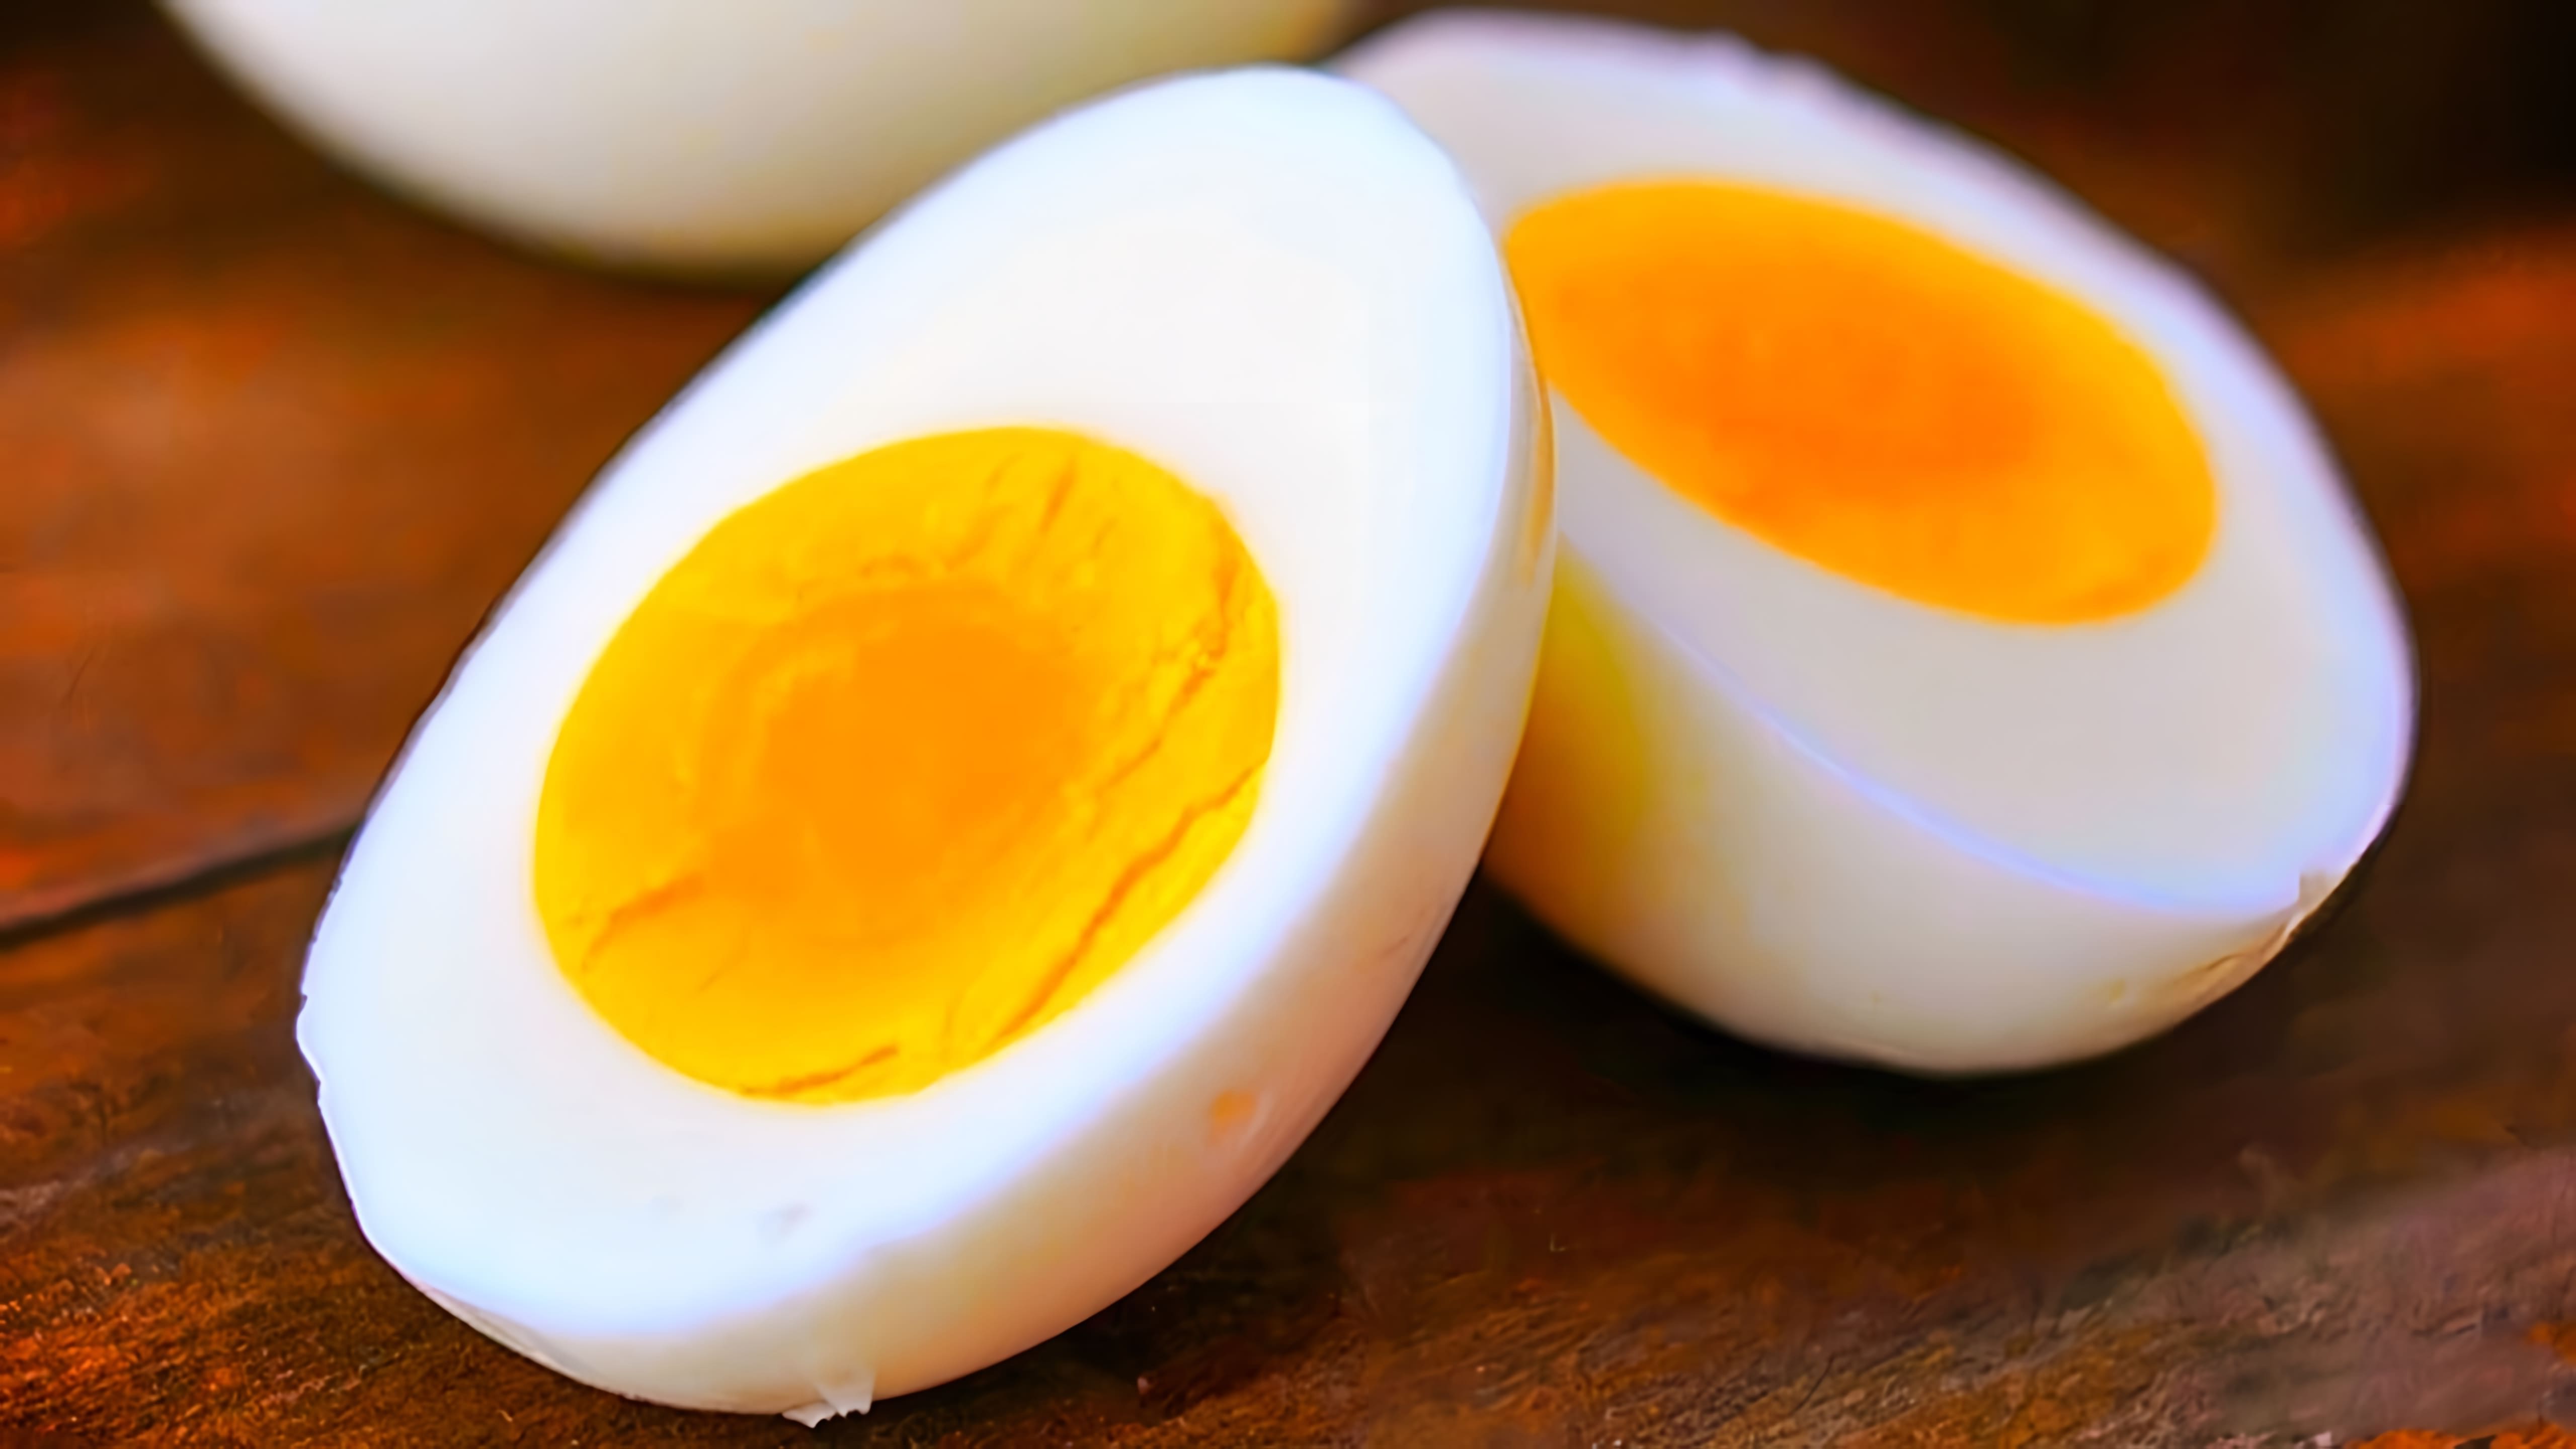 В этом видео-ролике рассказывается о диете, которая позволяет сбросить 10 кг за 2 недели, основанной на употреблении вареных яиц